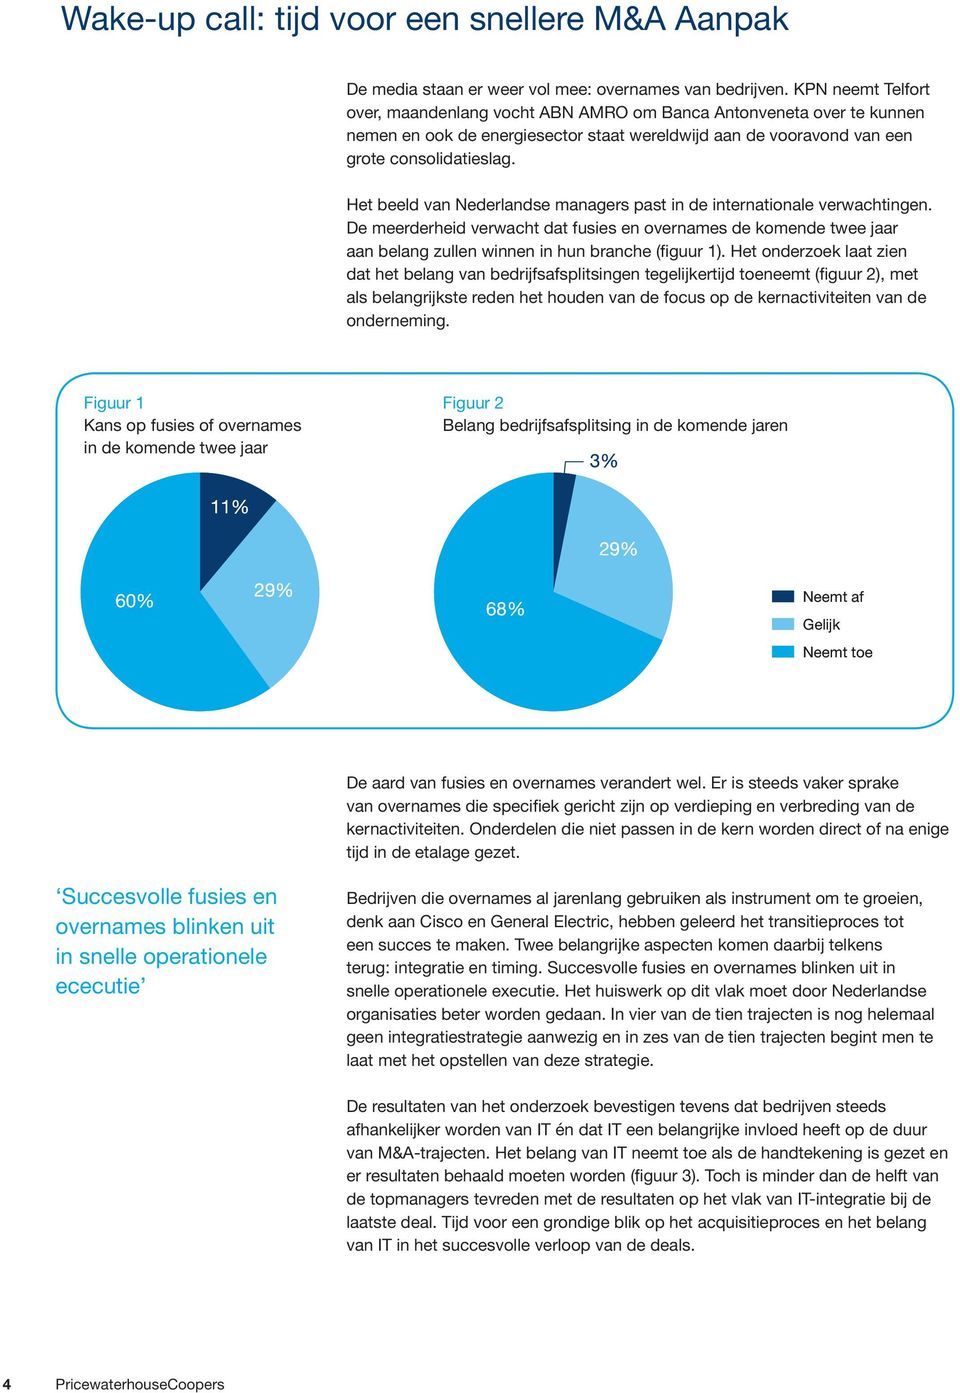 Het beeld van Nederlandse managers past in de internationale verwachtingen. De meerderheid verwacht dat fusies en overnames de komende twee jaar aan belang zullen winnen in hun branche (figuur 1).